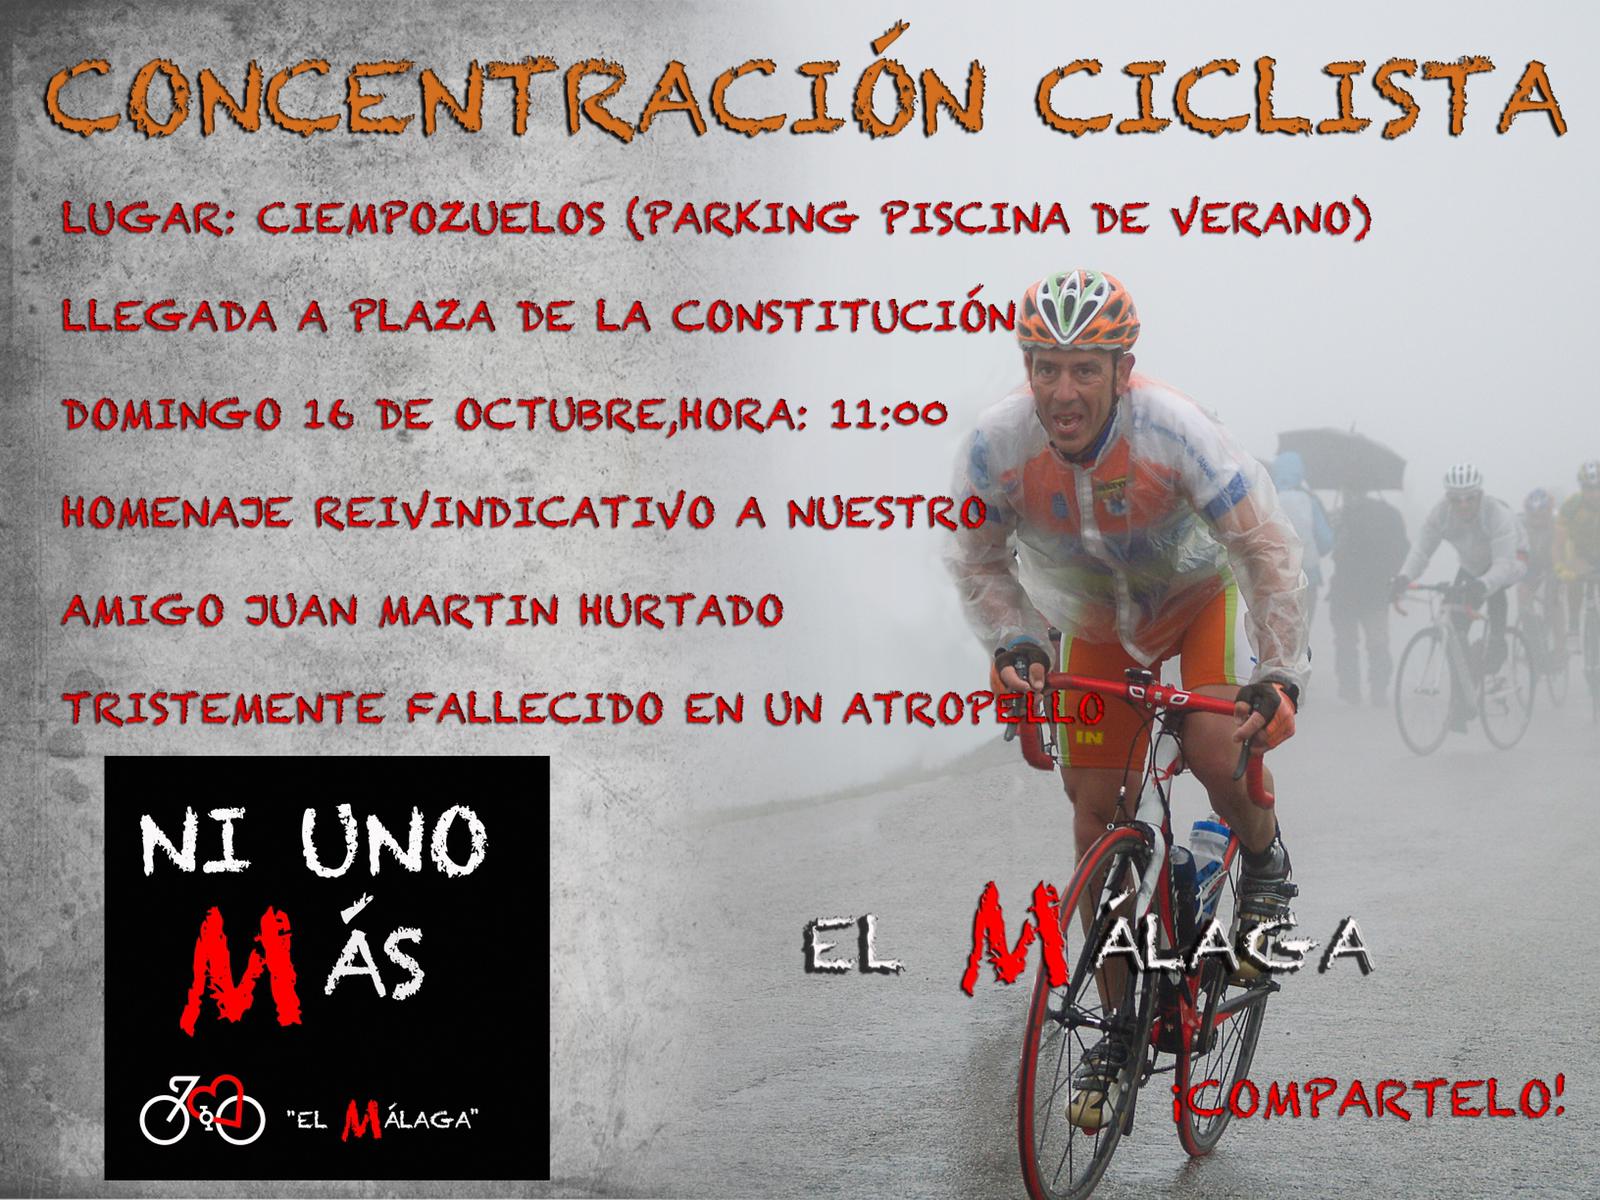 Concentración ciclista este domingo en Ciempozuelos